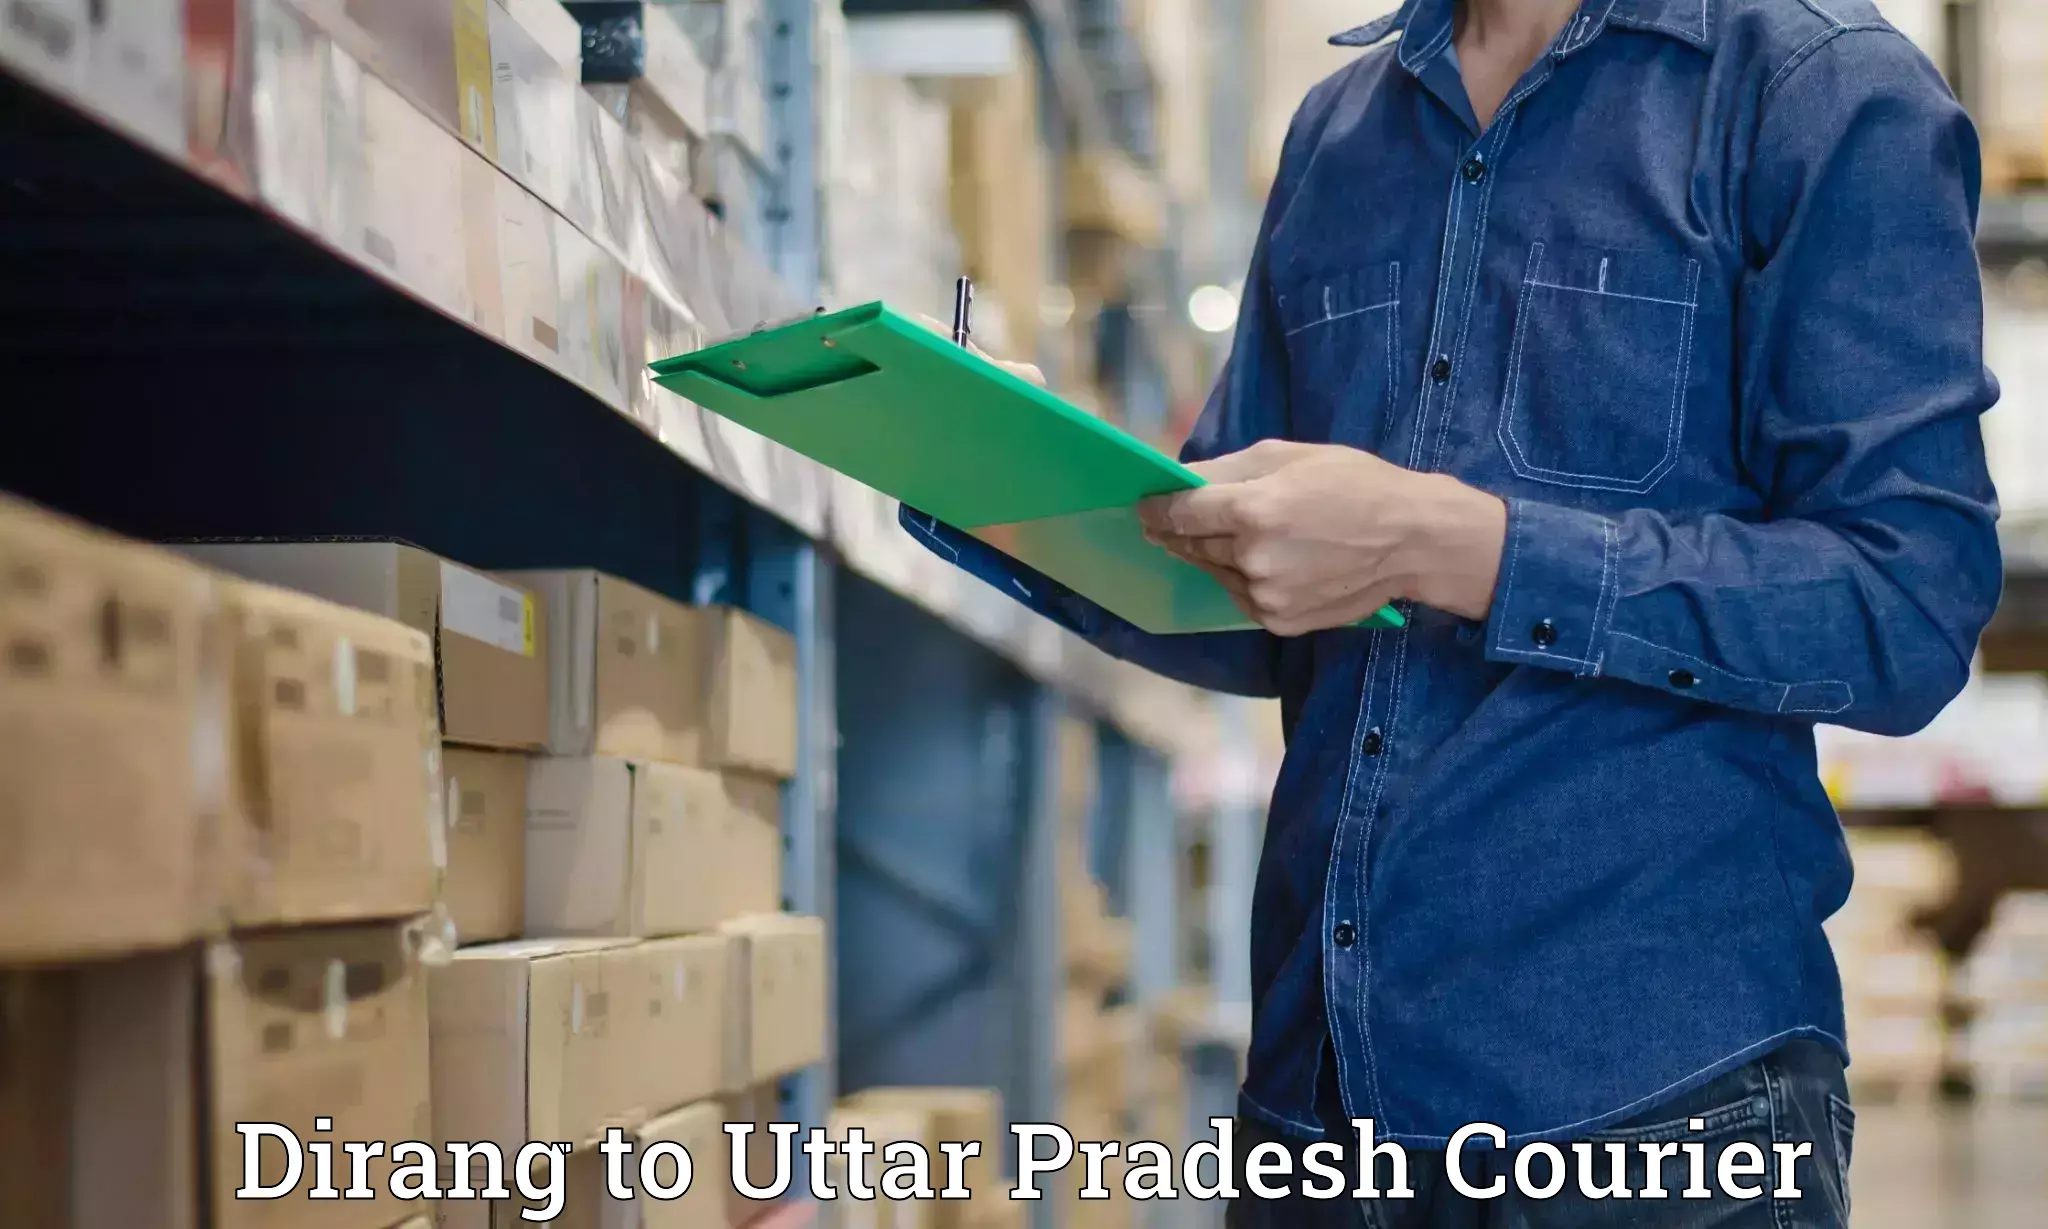 Door-to-door baggage service Dirang to Uttar Pradesh